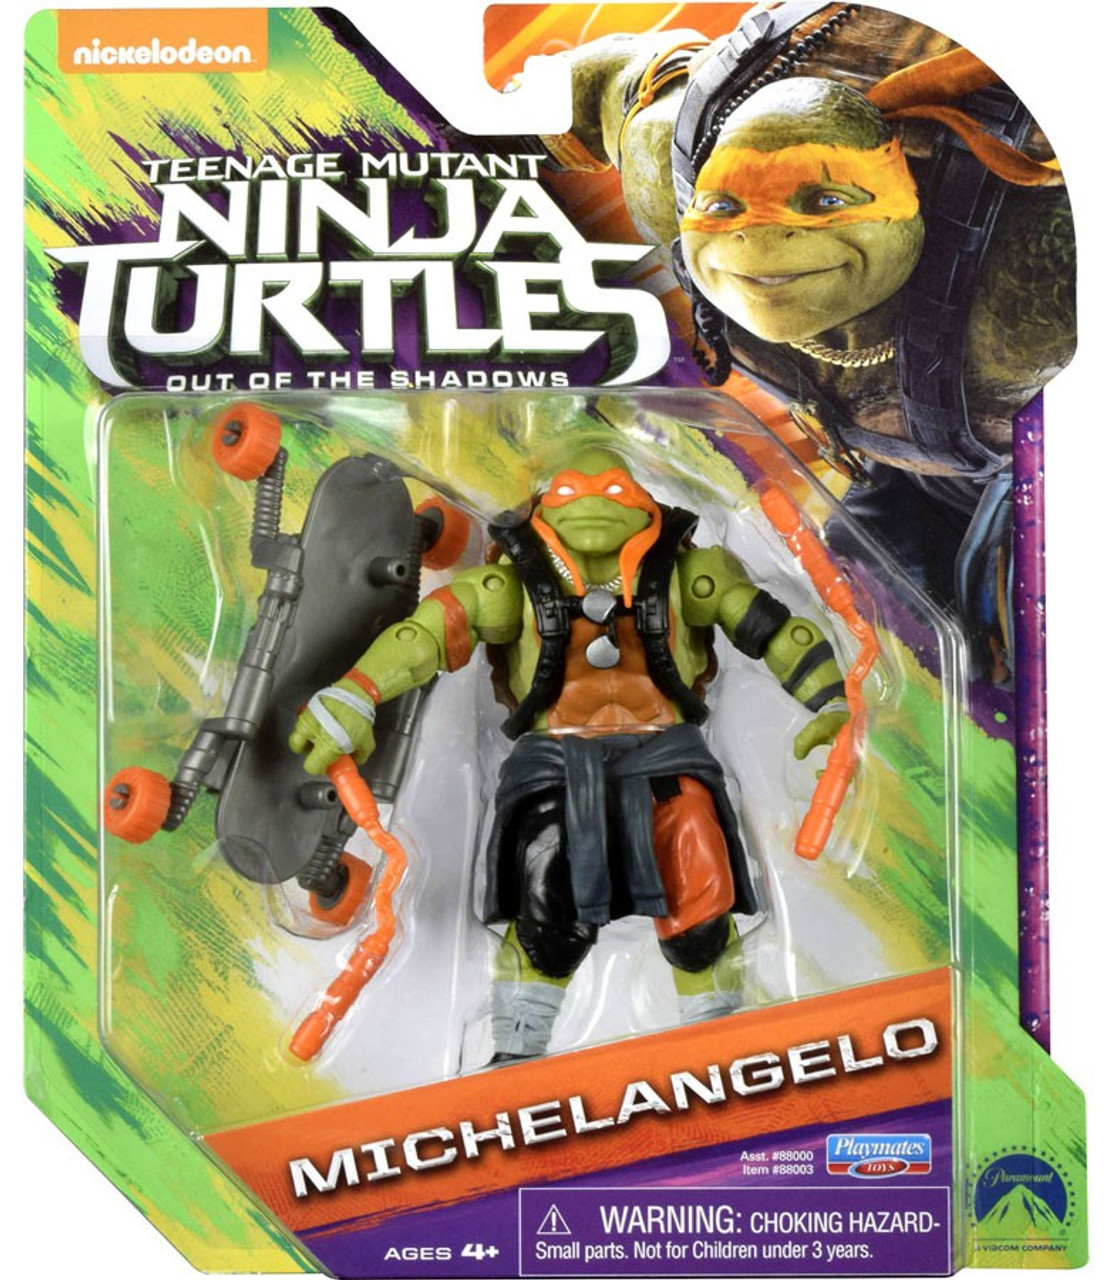 Teenage Mutant Ninja Turtles Out of the Shadows Michelangelo Action ... - Teenage Mutant Ninja Turtles Out Of The ShaDows Michelangelo Action Figure Playmates 7  53313.1461396771